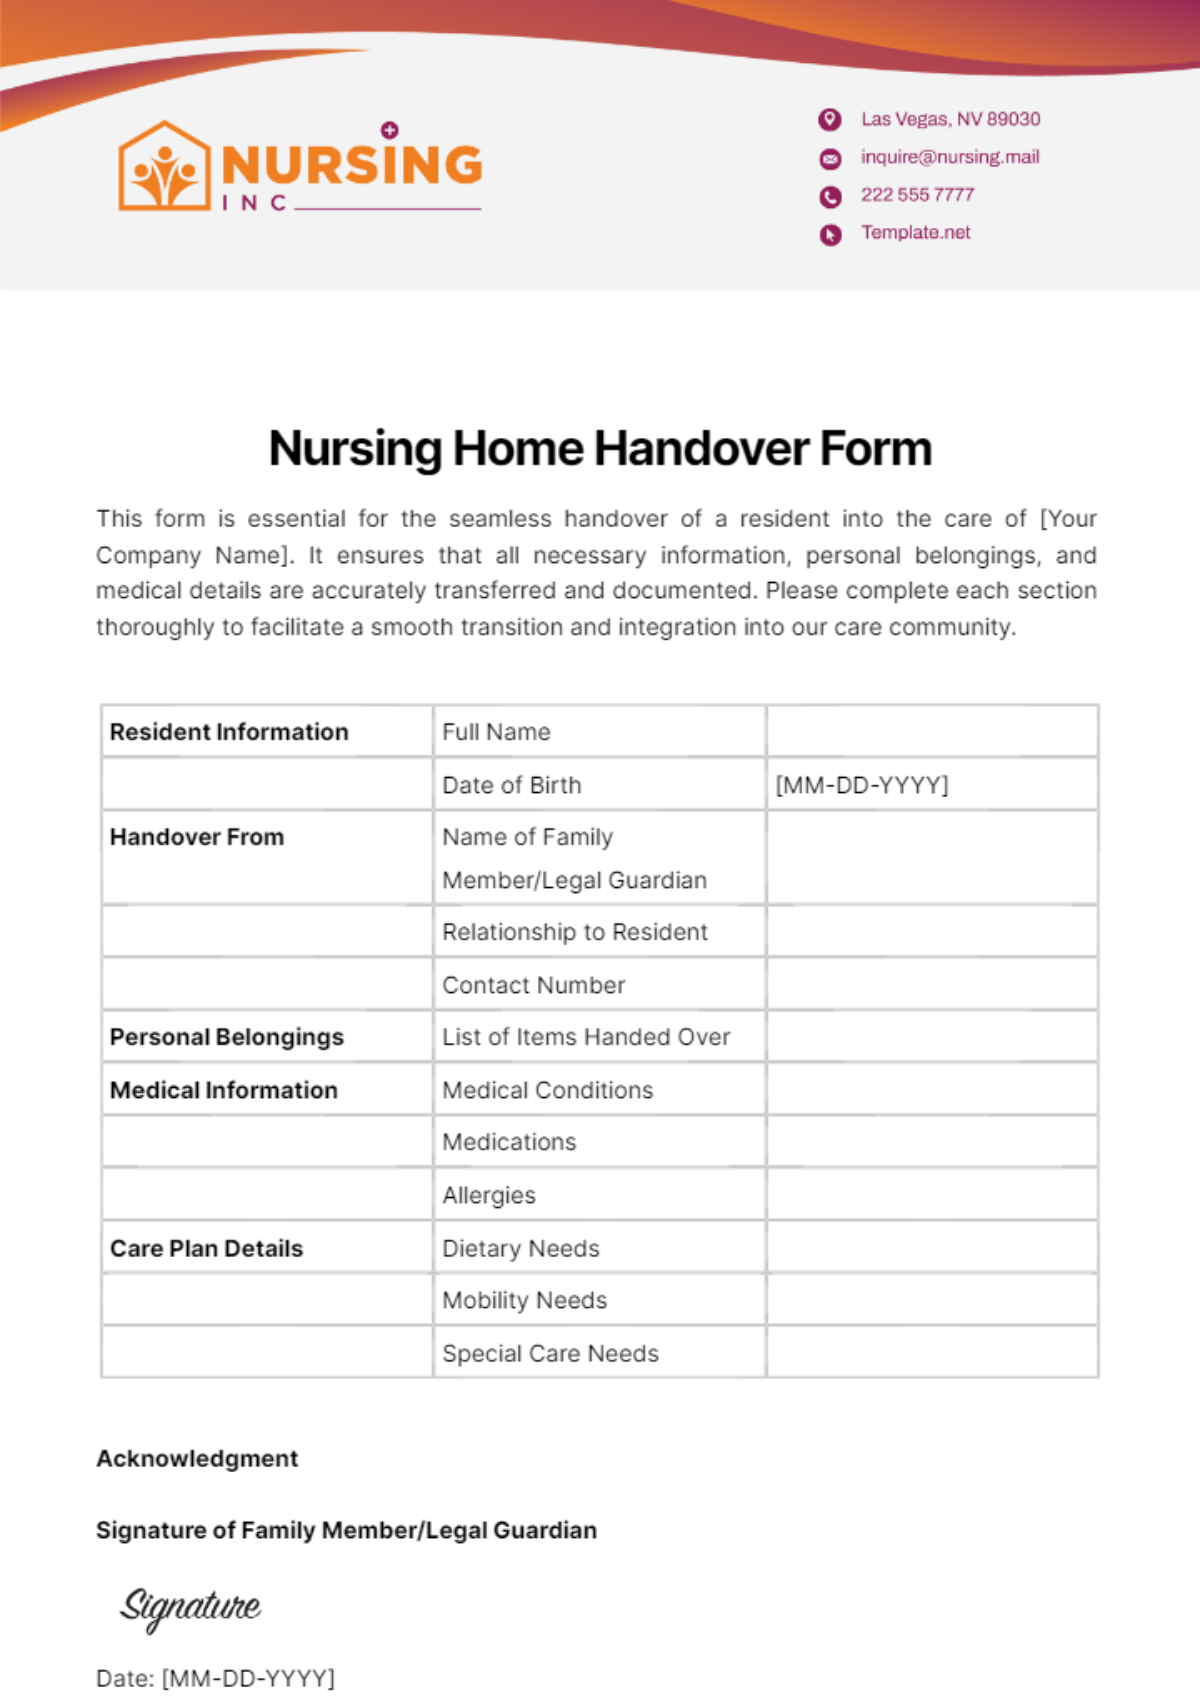 Nursing Home Handover Form Template